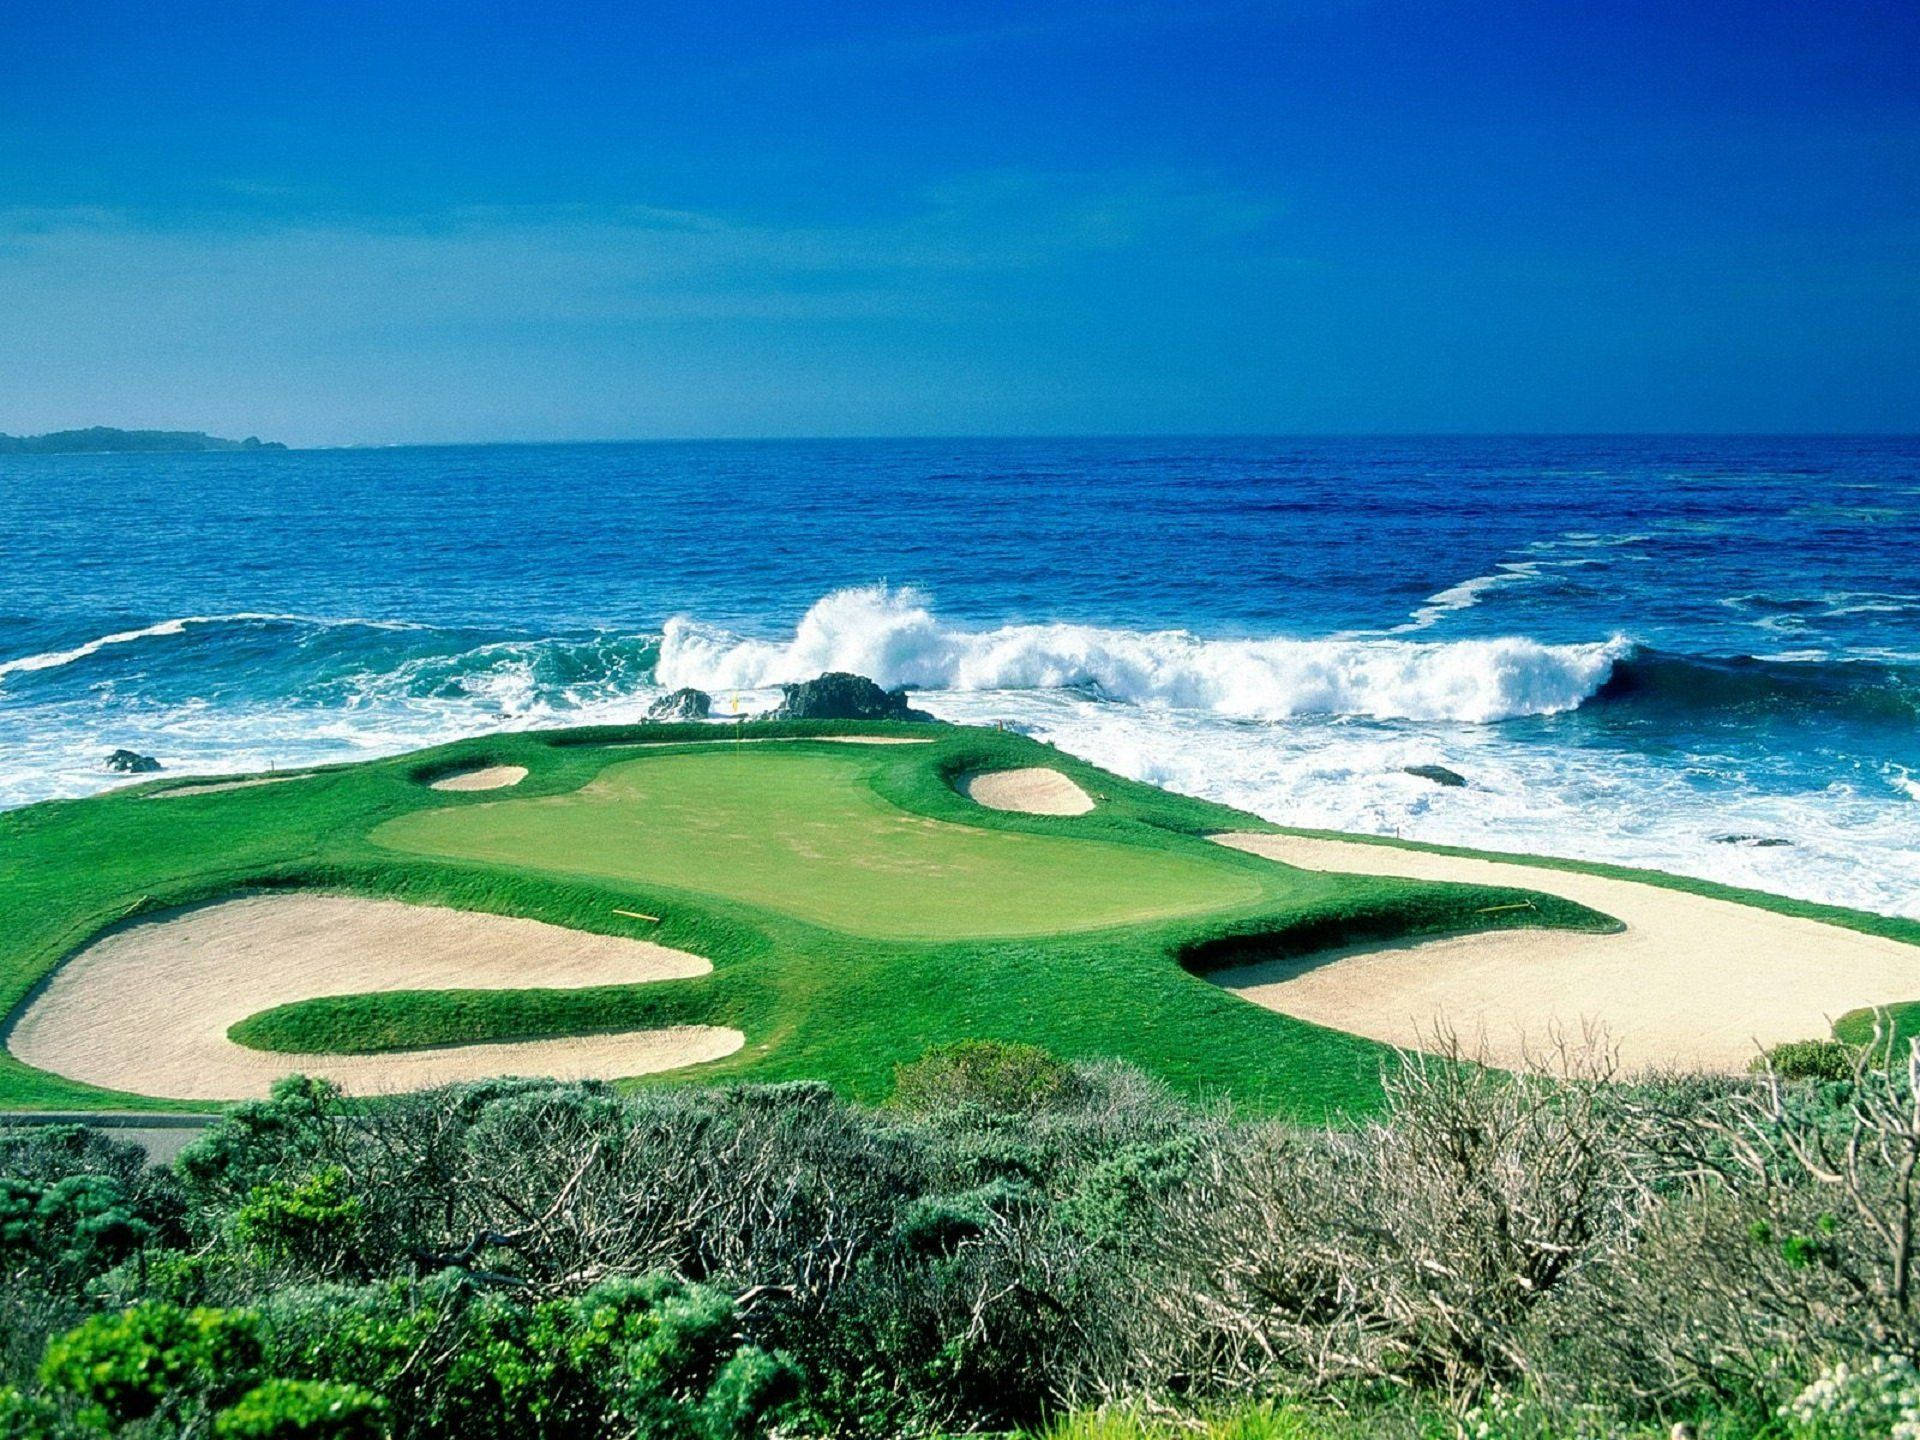 Ultra Hd Golf Course Blue Ocean